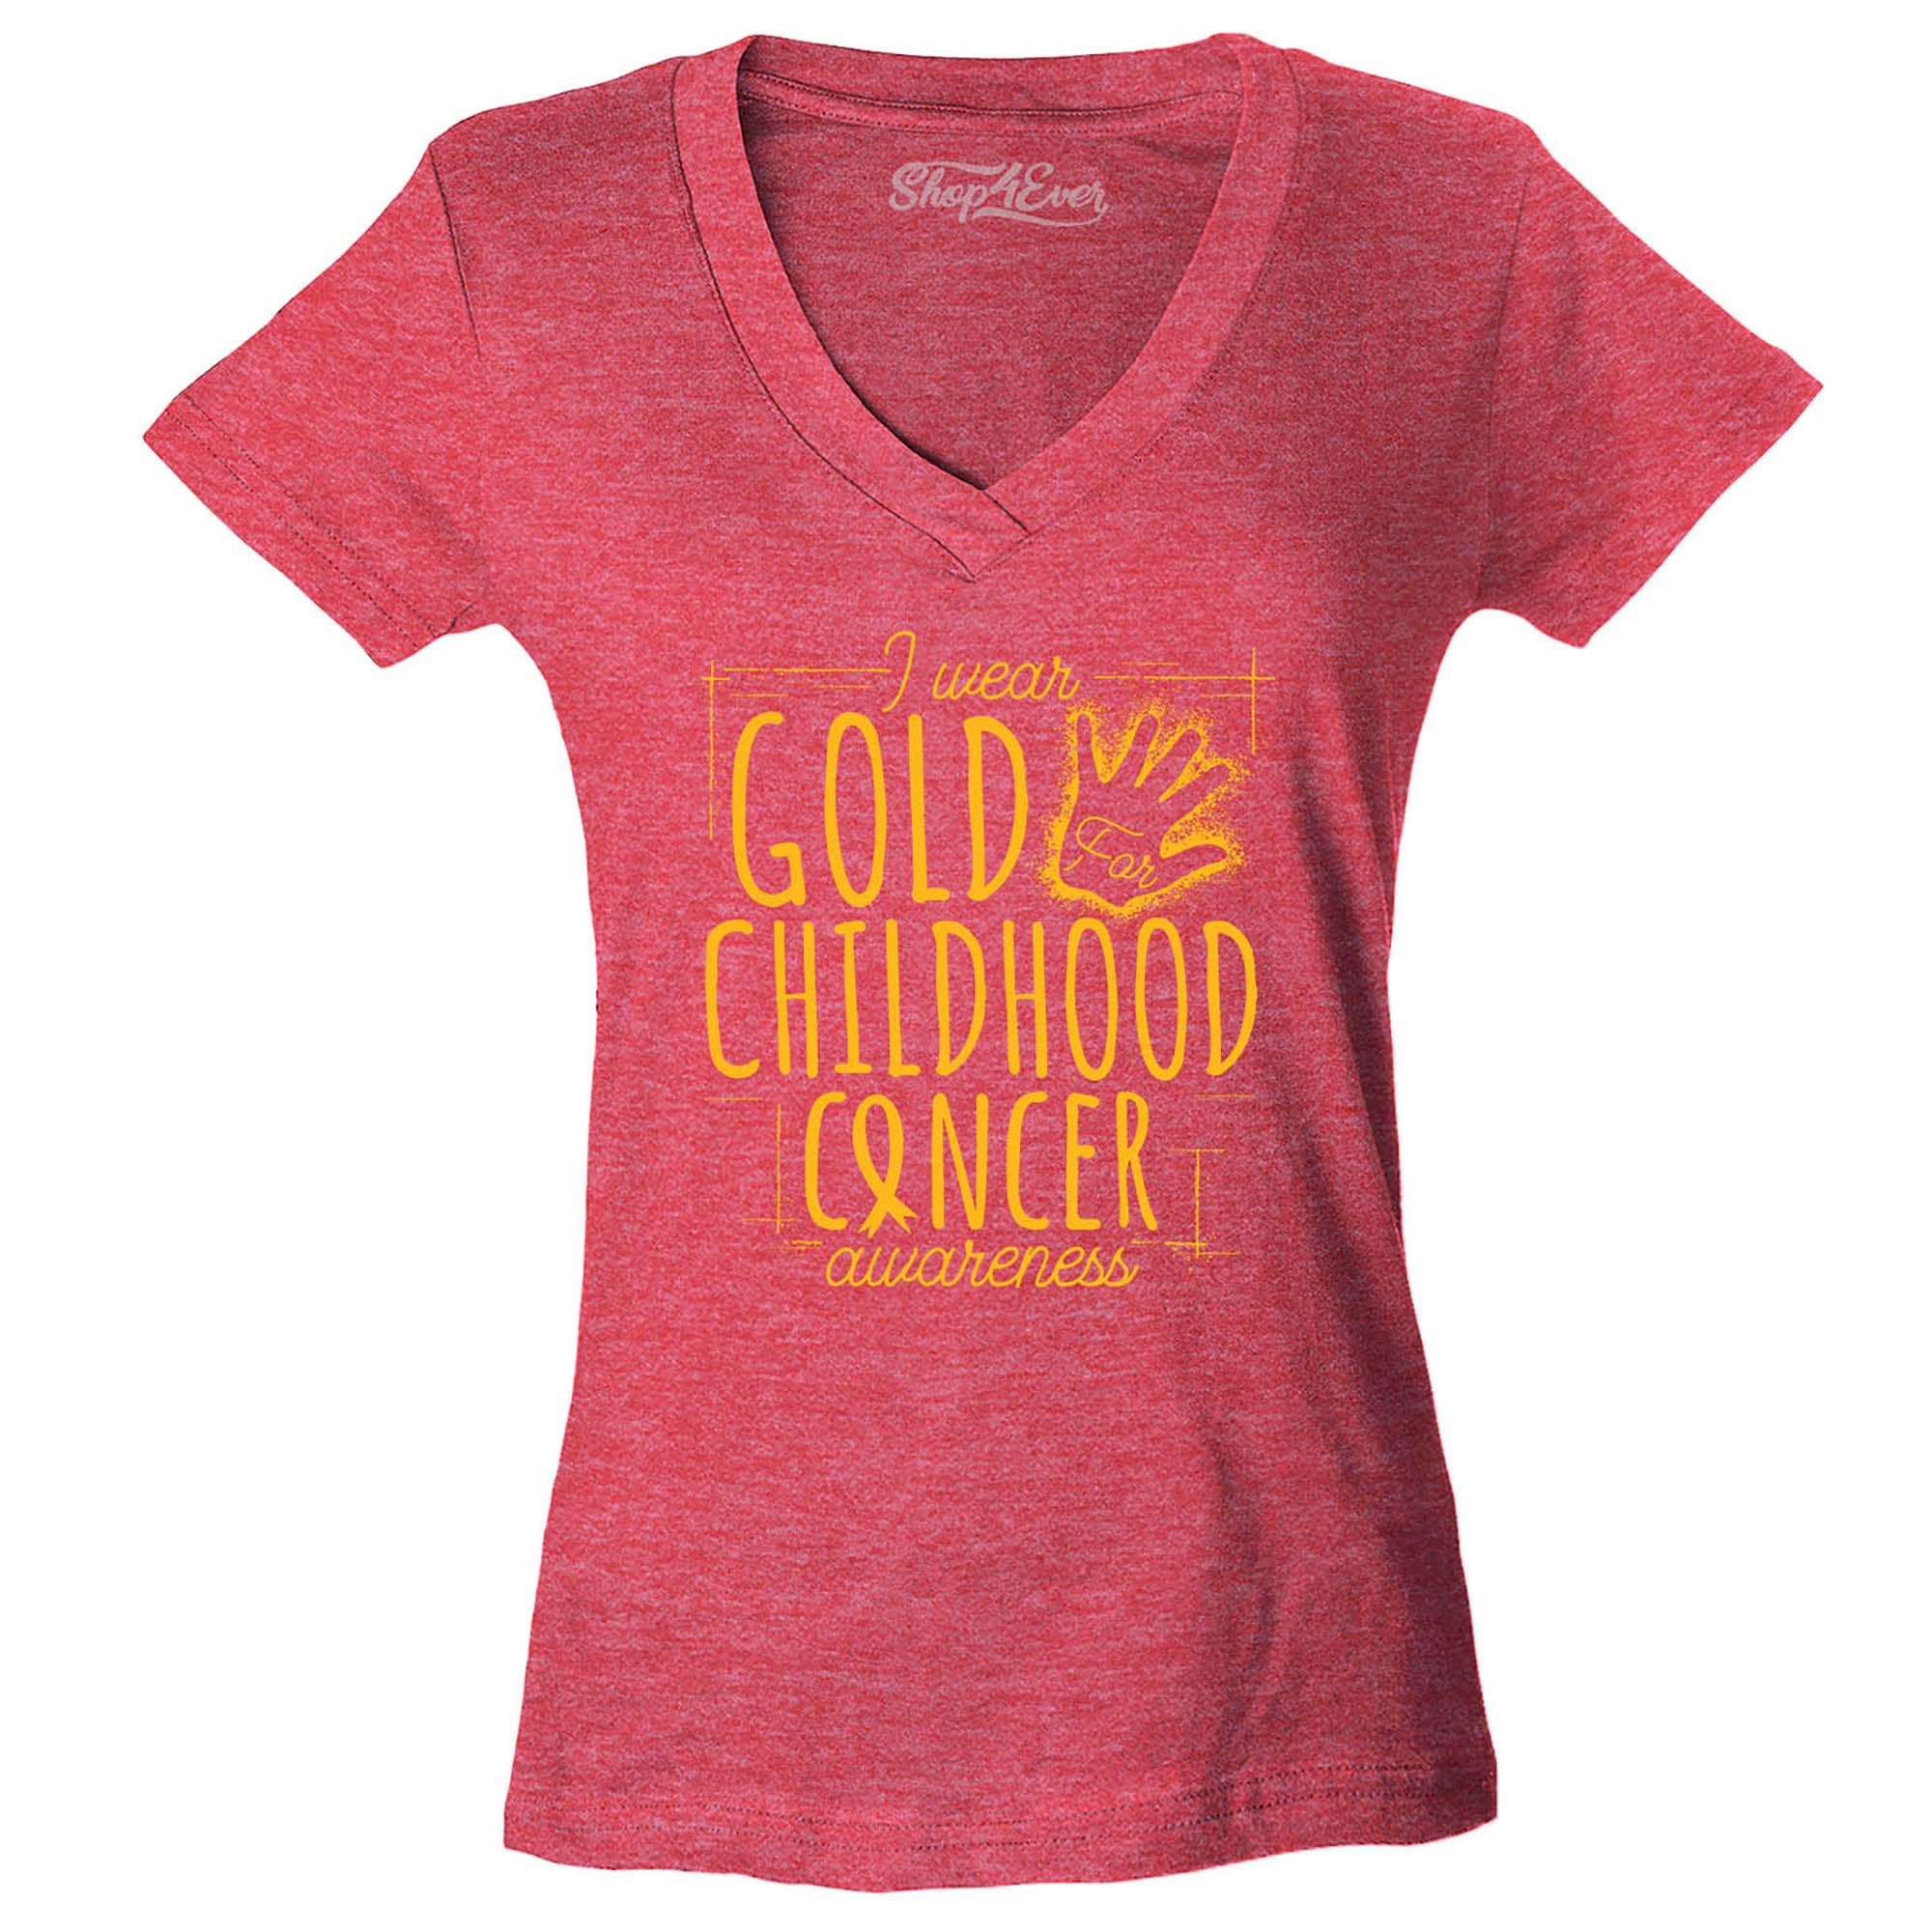 I Wear Gold for Childhood Cancer Awareness Women's V-Neck T-Shirt Slim Fit